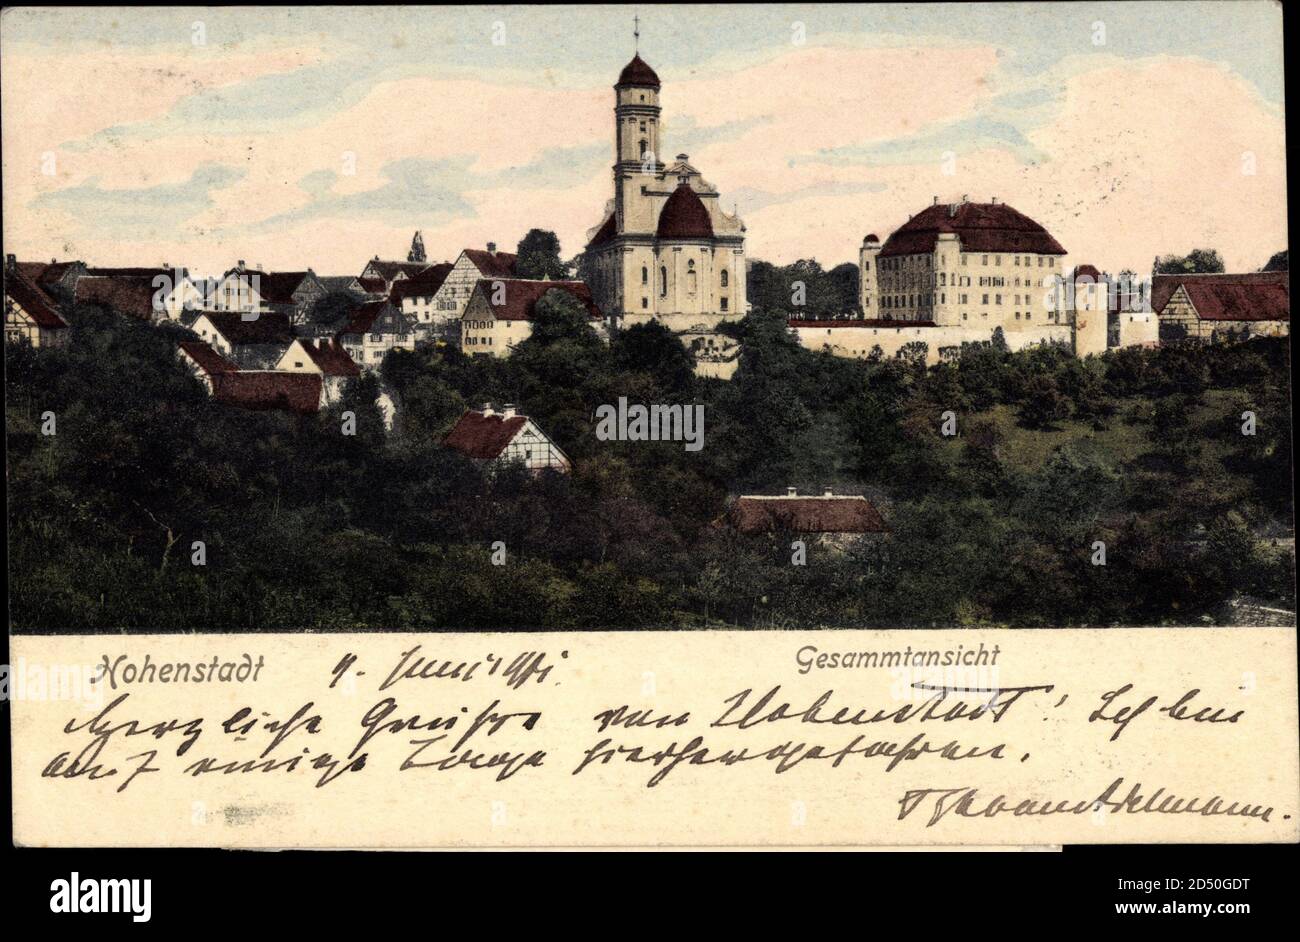 Záb?eh Hohenstadt an der March Region Olmütz, Schloss, Graf Adelmann | utilizzo in tutto il mondo Foto Stock